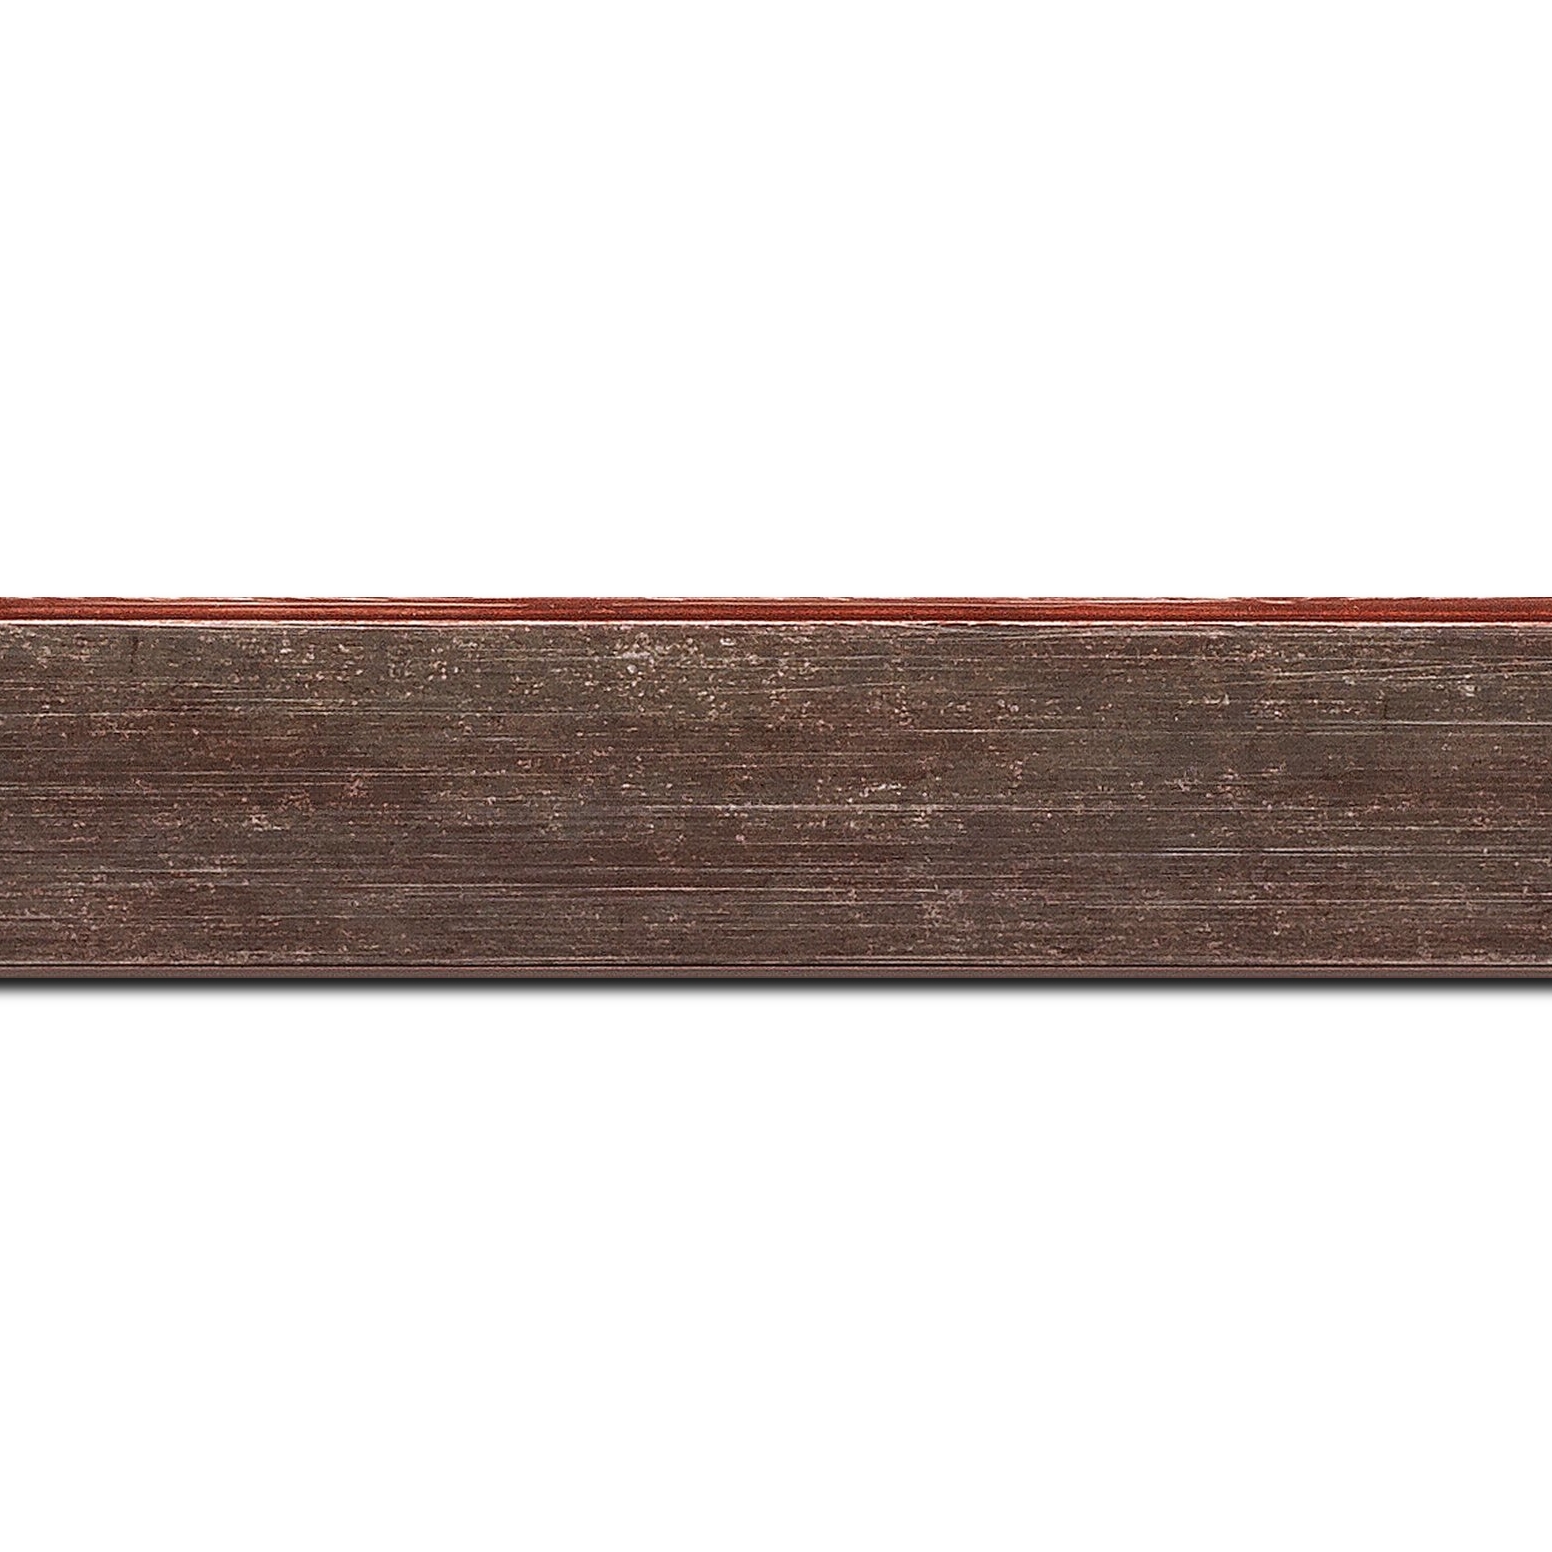 Baguette longueur 1.40m bois profil plat incliné largeur 3.7cm couleur bordeaux lie de vin effet ressuyé